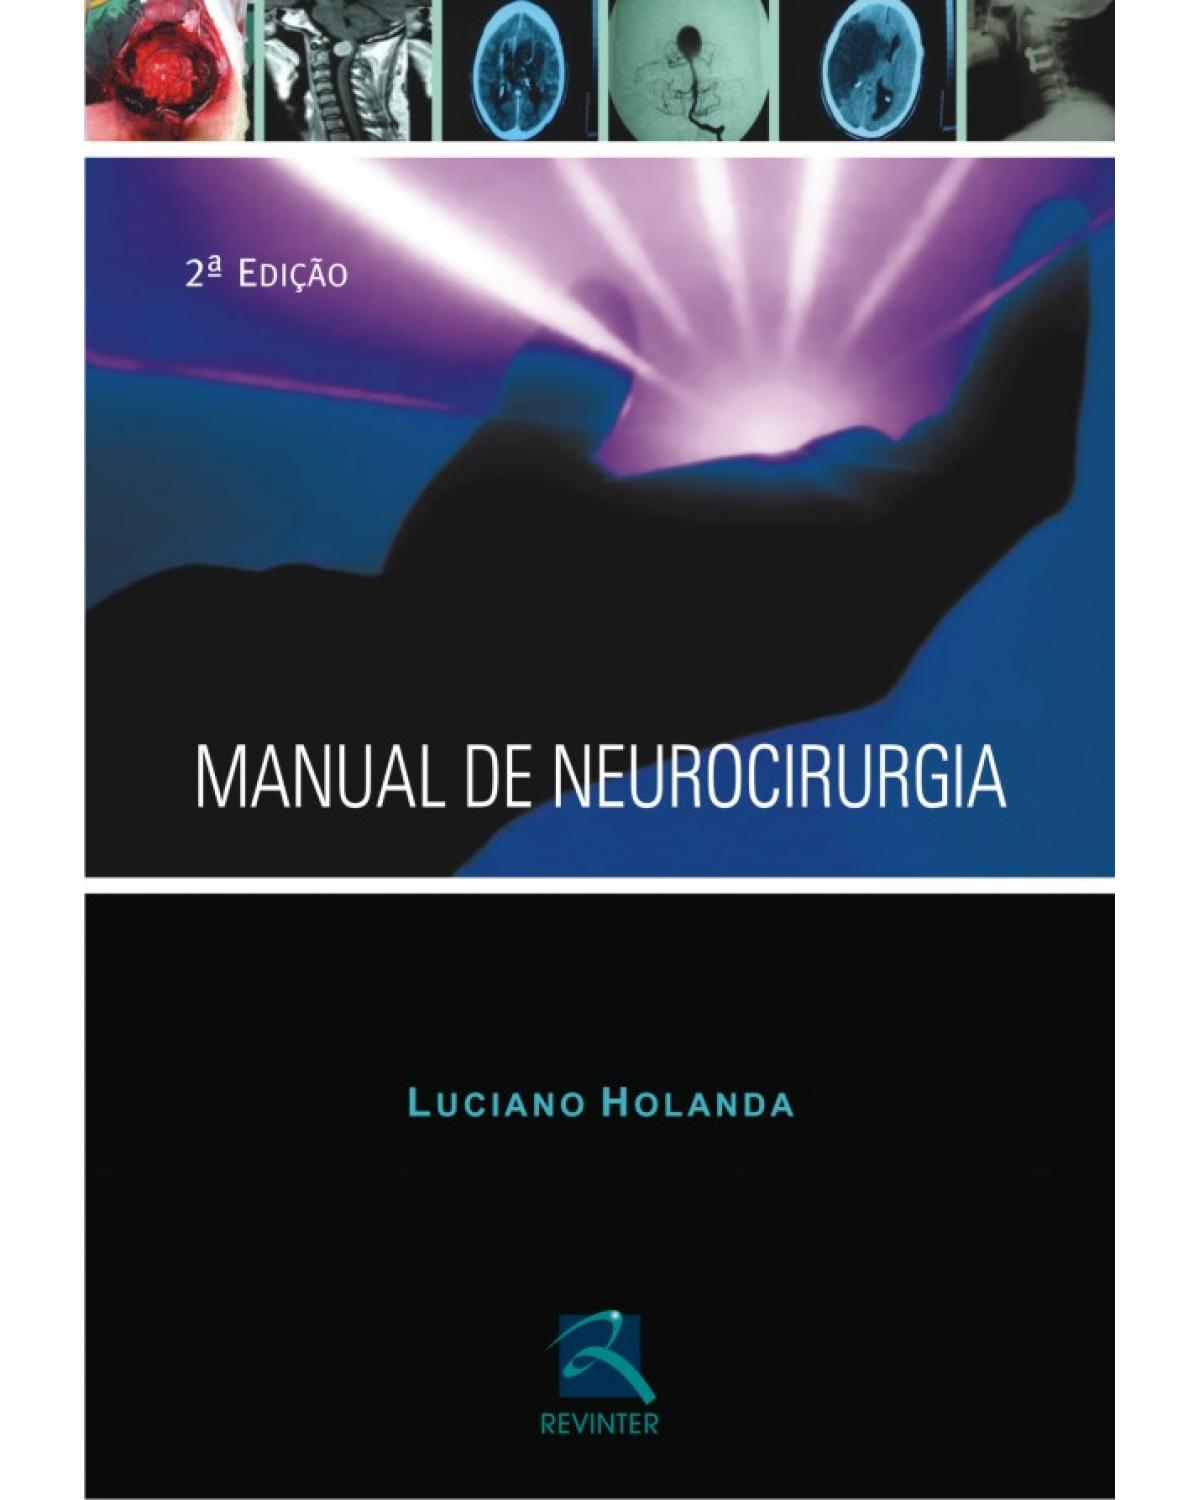 Manual de neurocirurgia - 2ª Edição | 2010